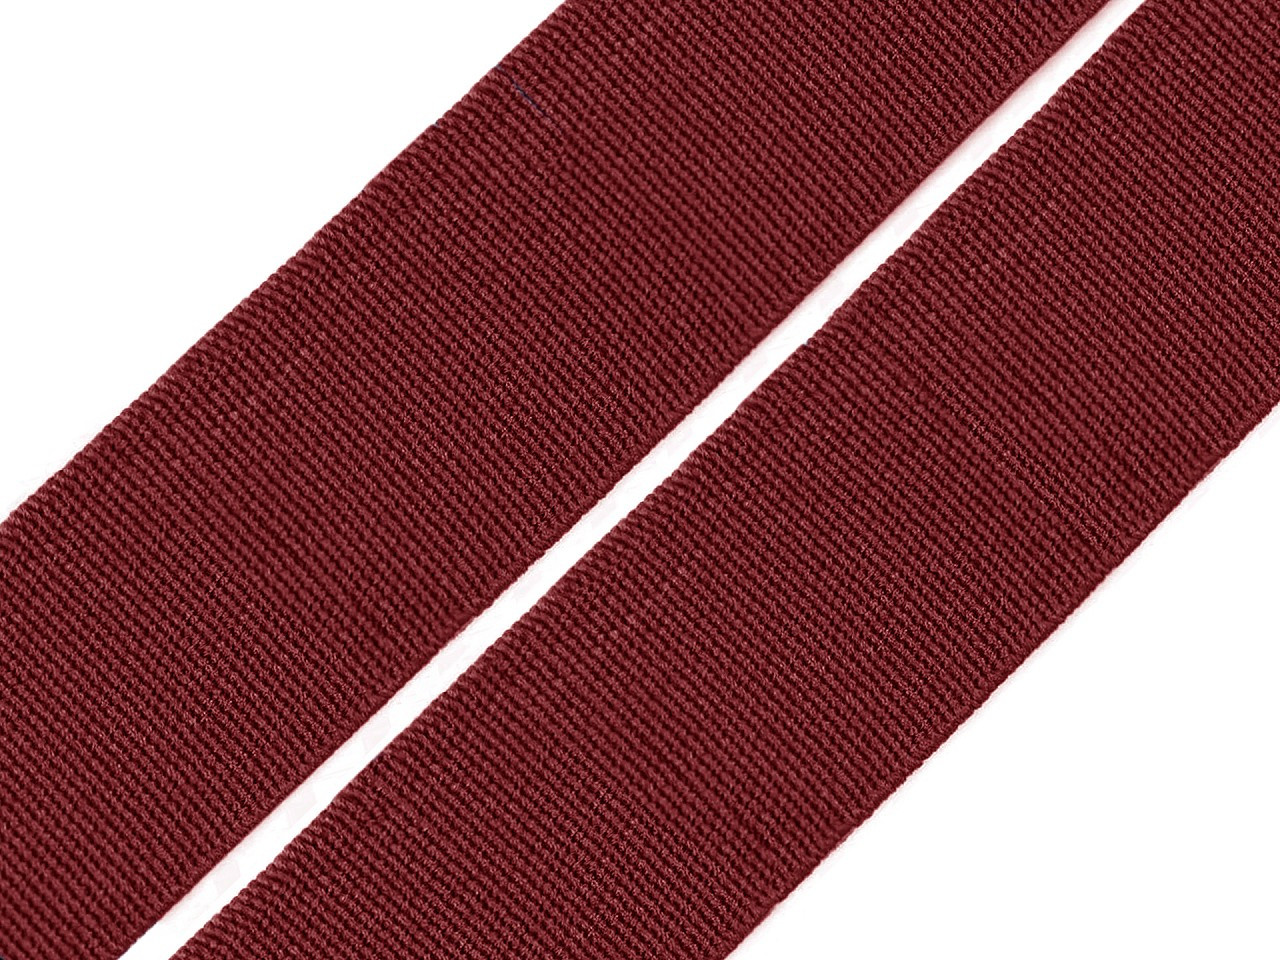 Pruženka hladká šíře 20 mm tkaná barevná, barva 7504 bordó sv.